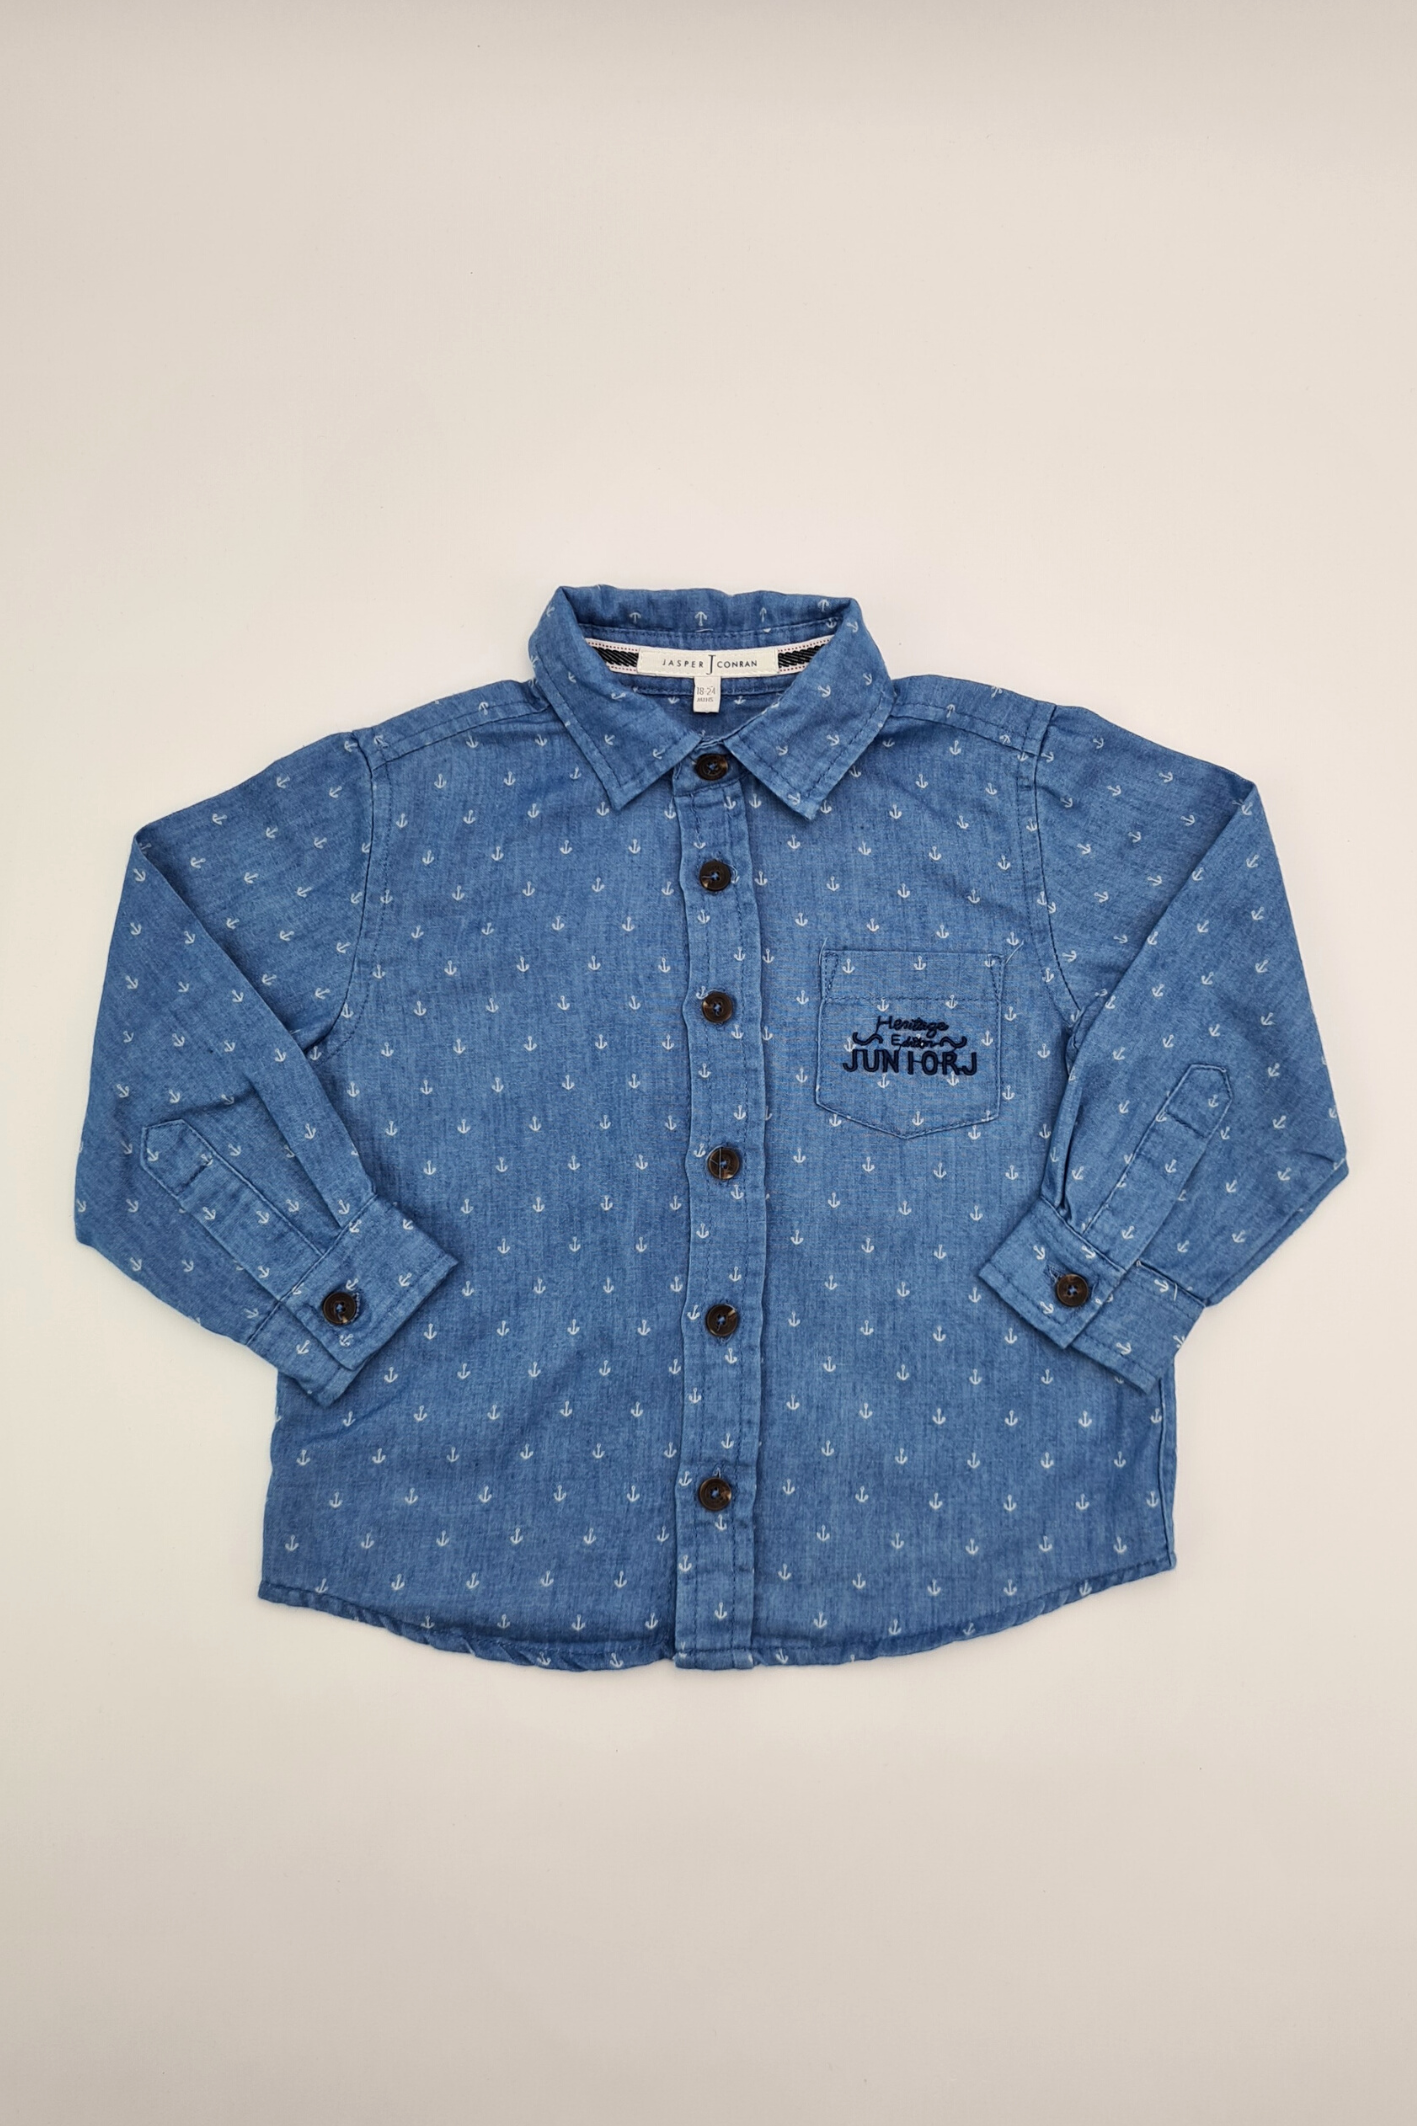 18-24m - Blue Nautical Print Button-up Shirt (Jasper Conran)